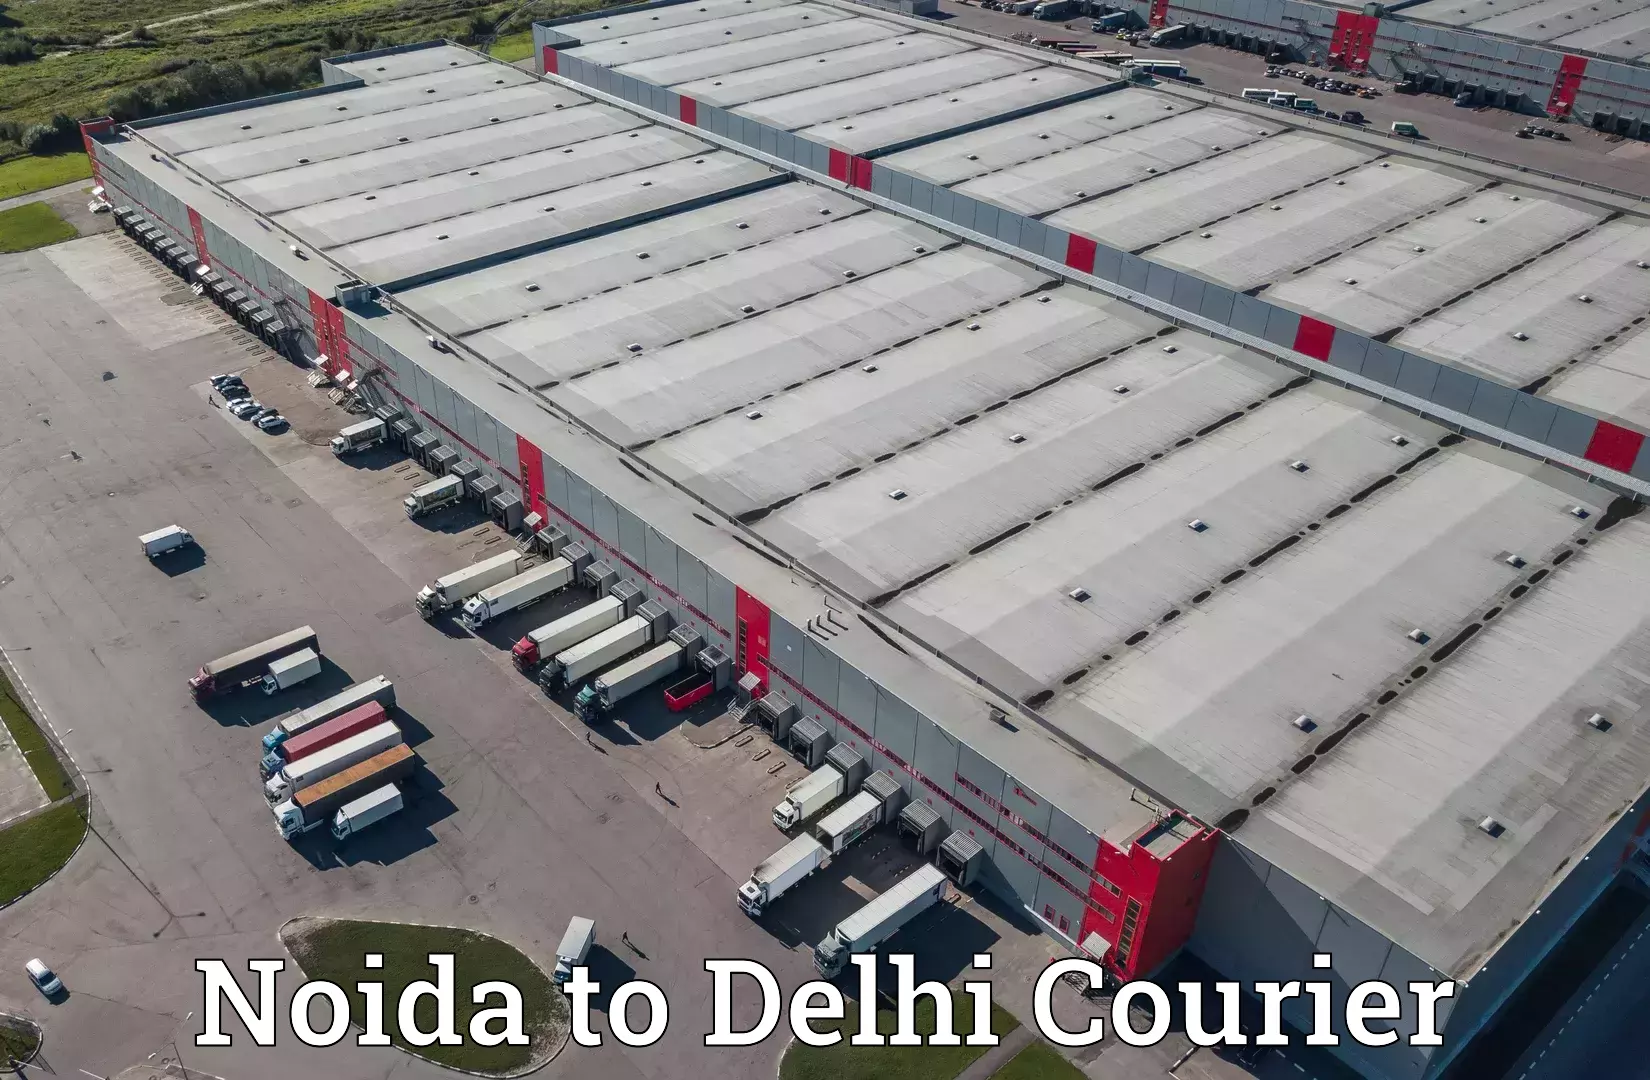 Courier service comparison Noida to Delhi